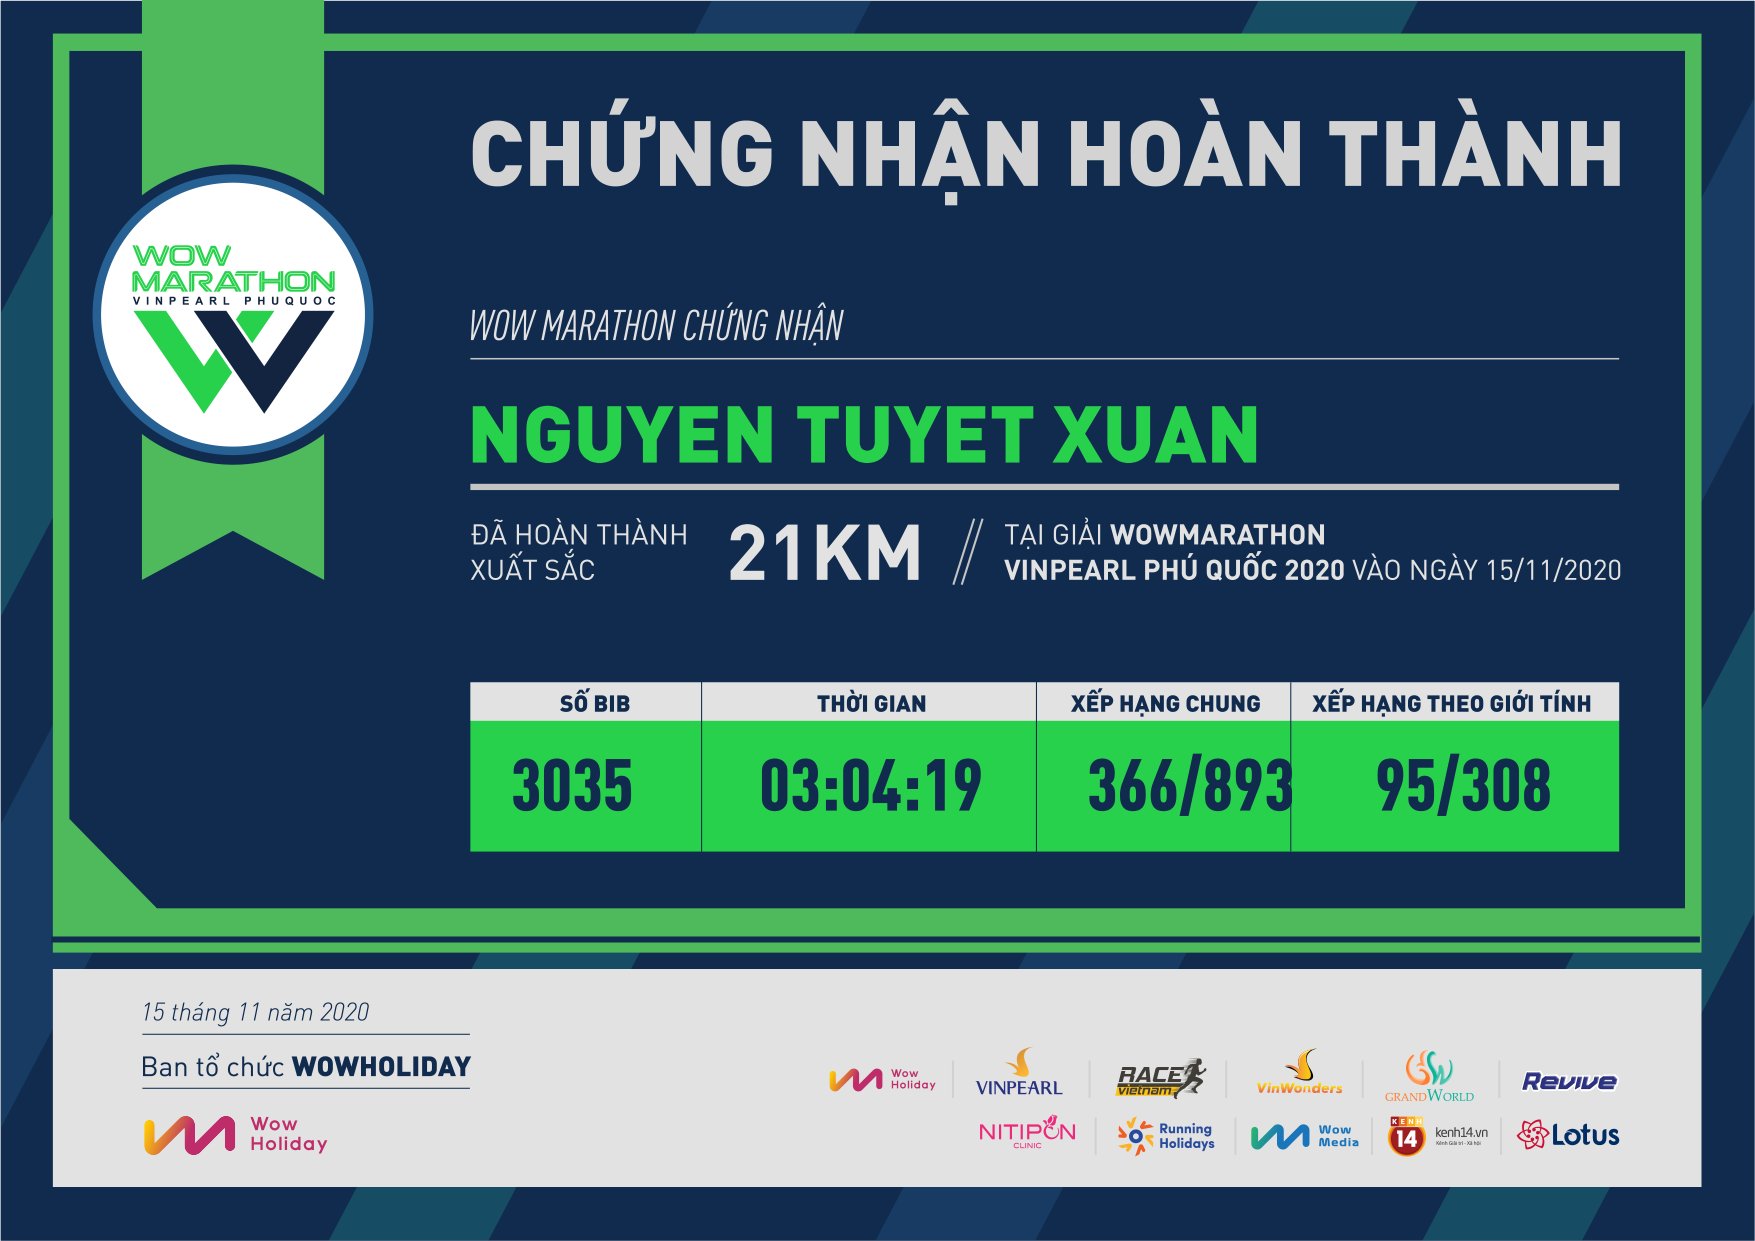 3035 - Nguyen Tuyet Xuan